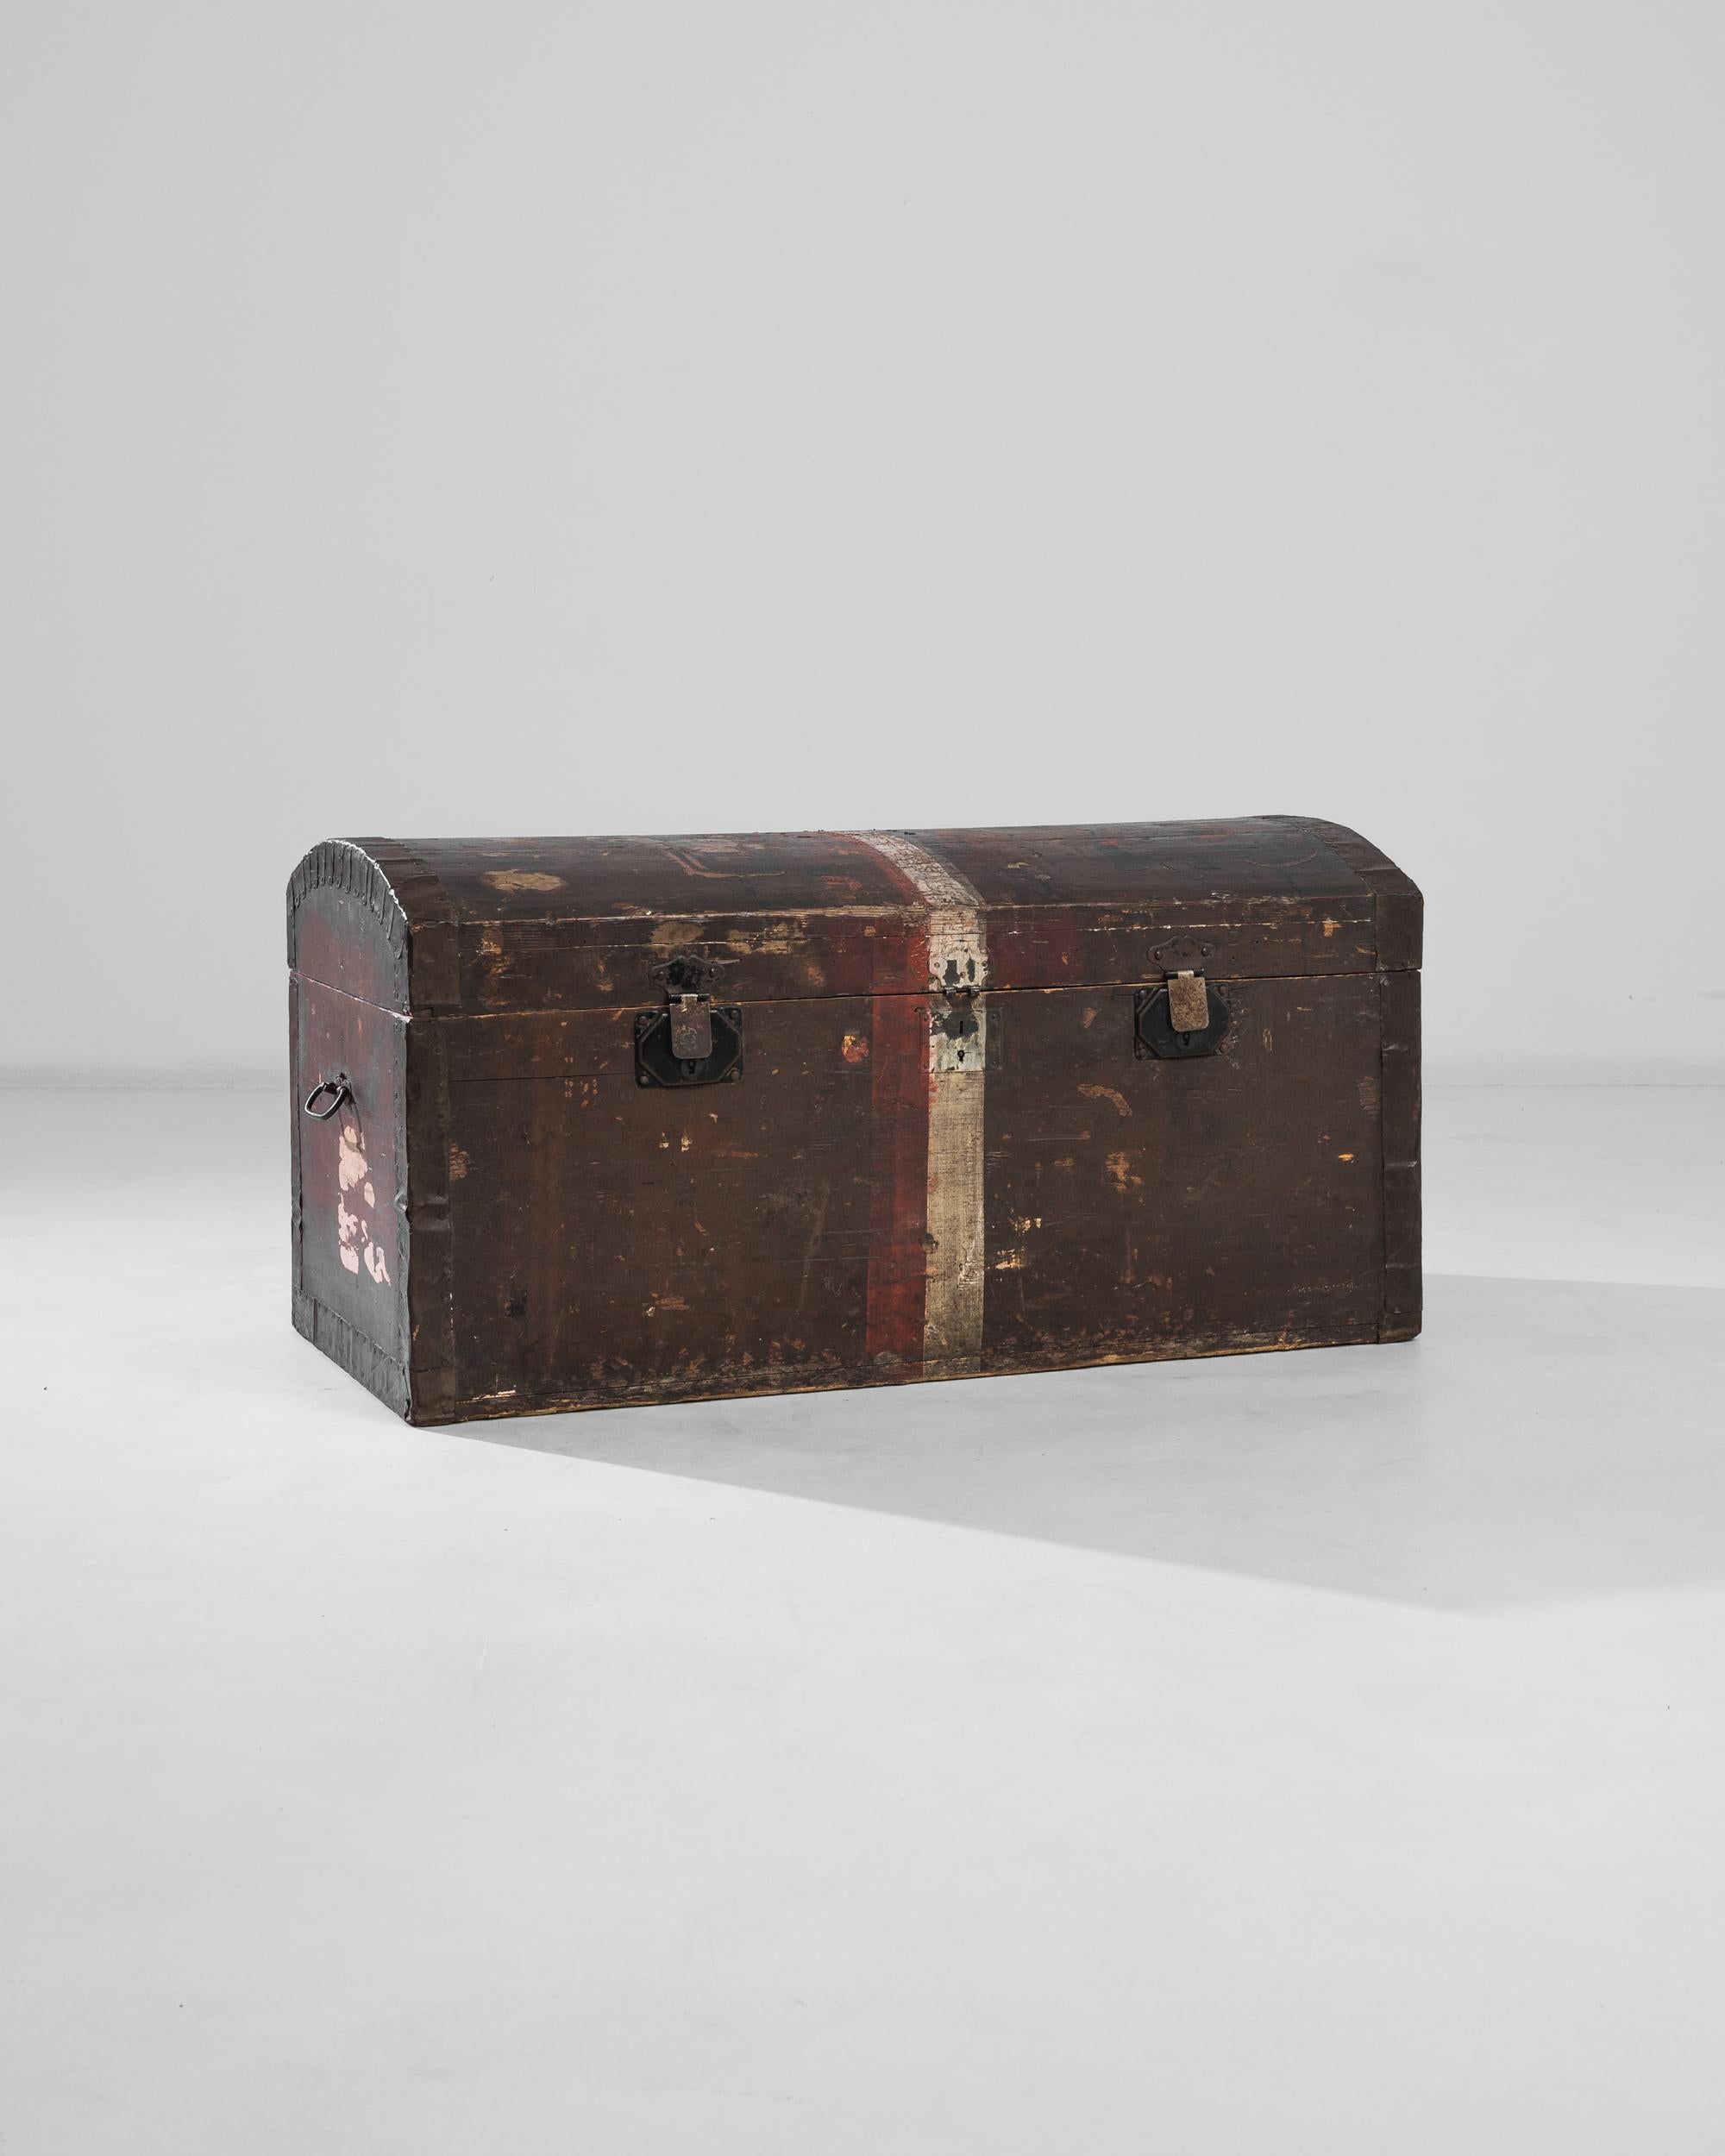 Dieser robuste, um 1900 in Frankreich aus Holz gefertigte Koffer verfügt über einen gewölbten Deckel, der die kantige Form des Koffers ausgleicht. Der weiß-rote Streifen, der in der Mitte der Kommode gemalt ist, spannt sie wie ein Band und bildet